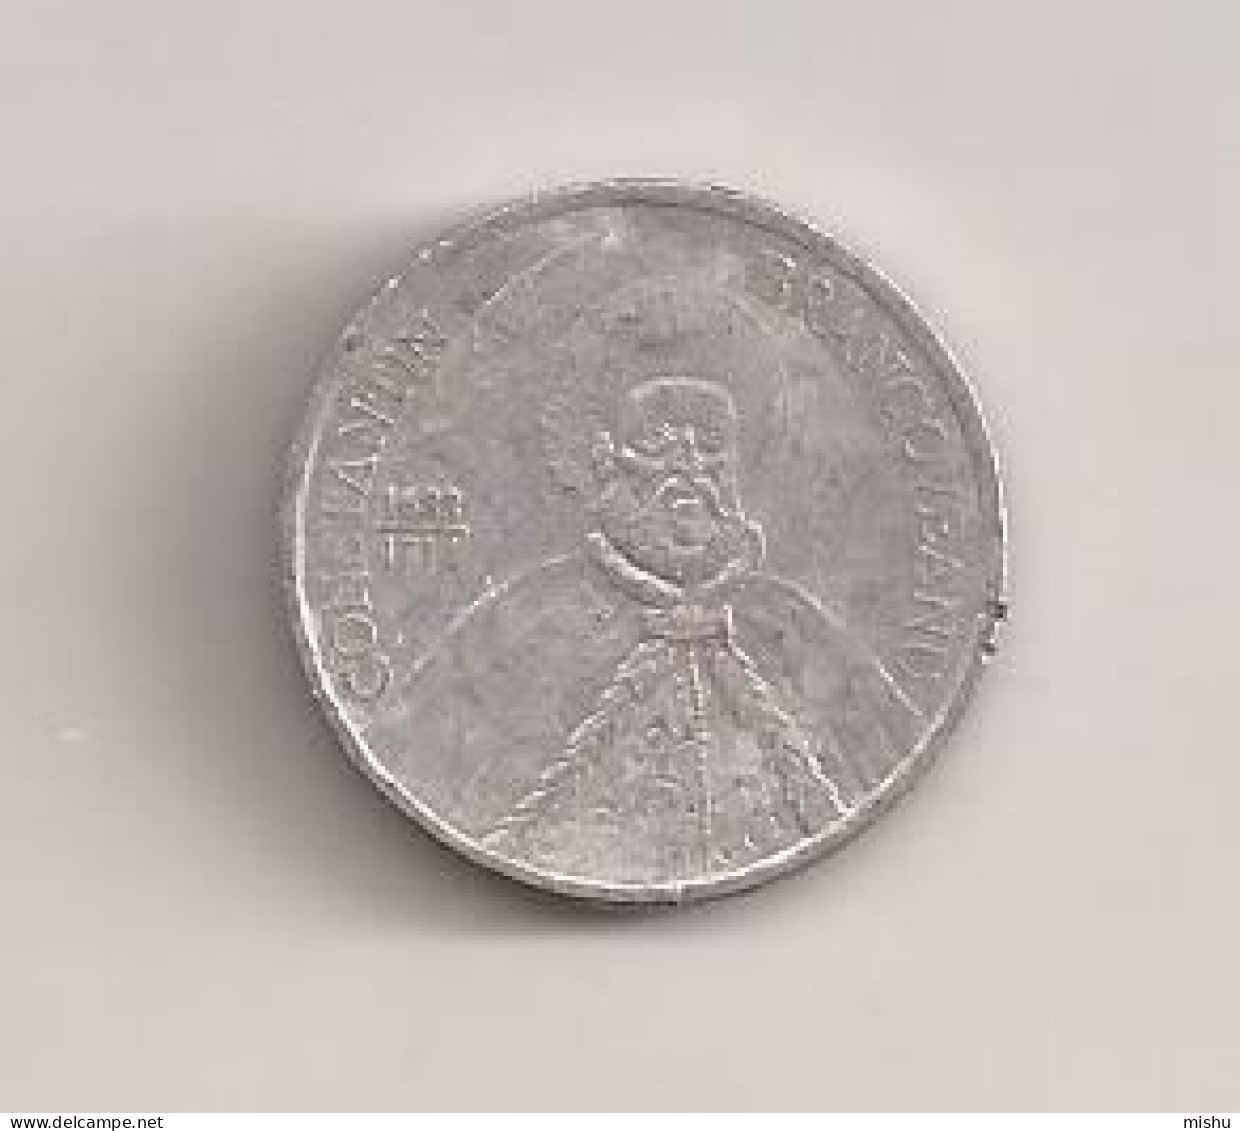 Coin - Romania - 1000 Lei 2004 V1 - Roumanie